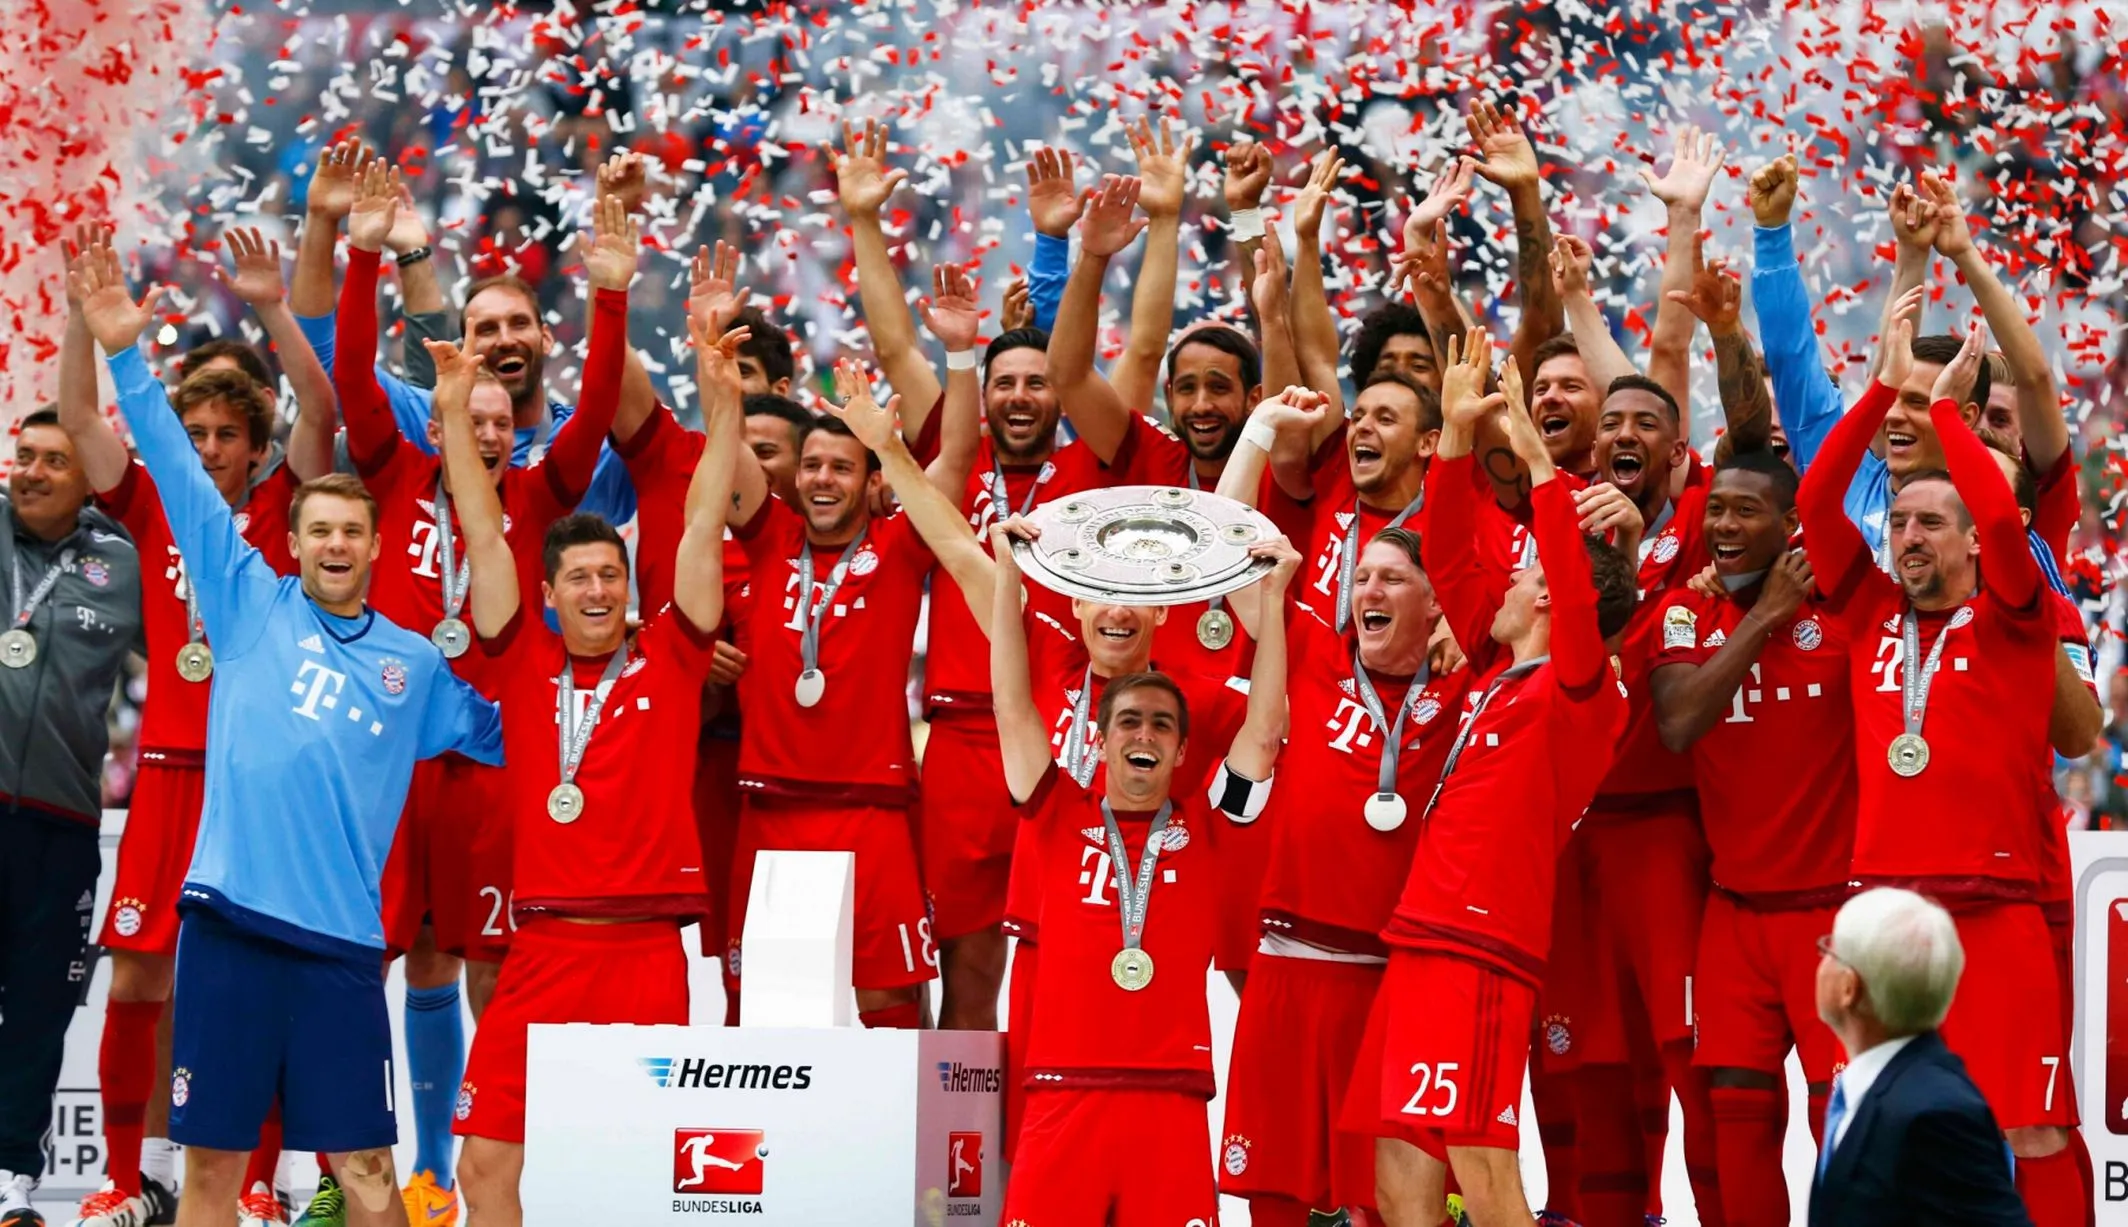 5 lý do khiến Bayern bị ghét cay ghét đắng: Quá độc tôn - Bóng Đá